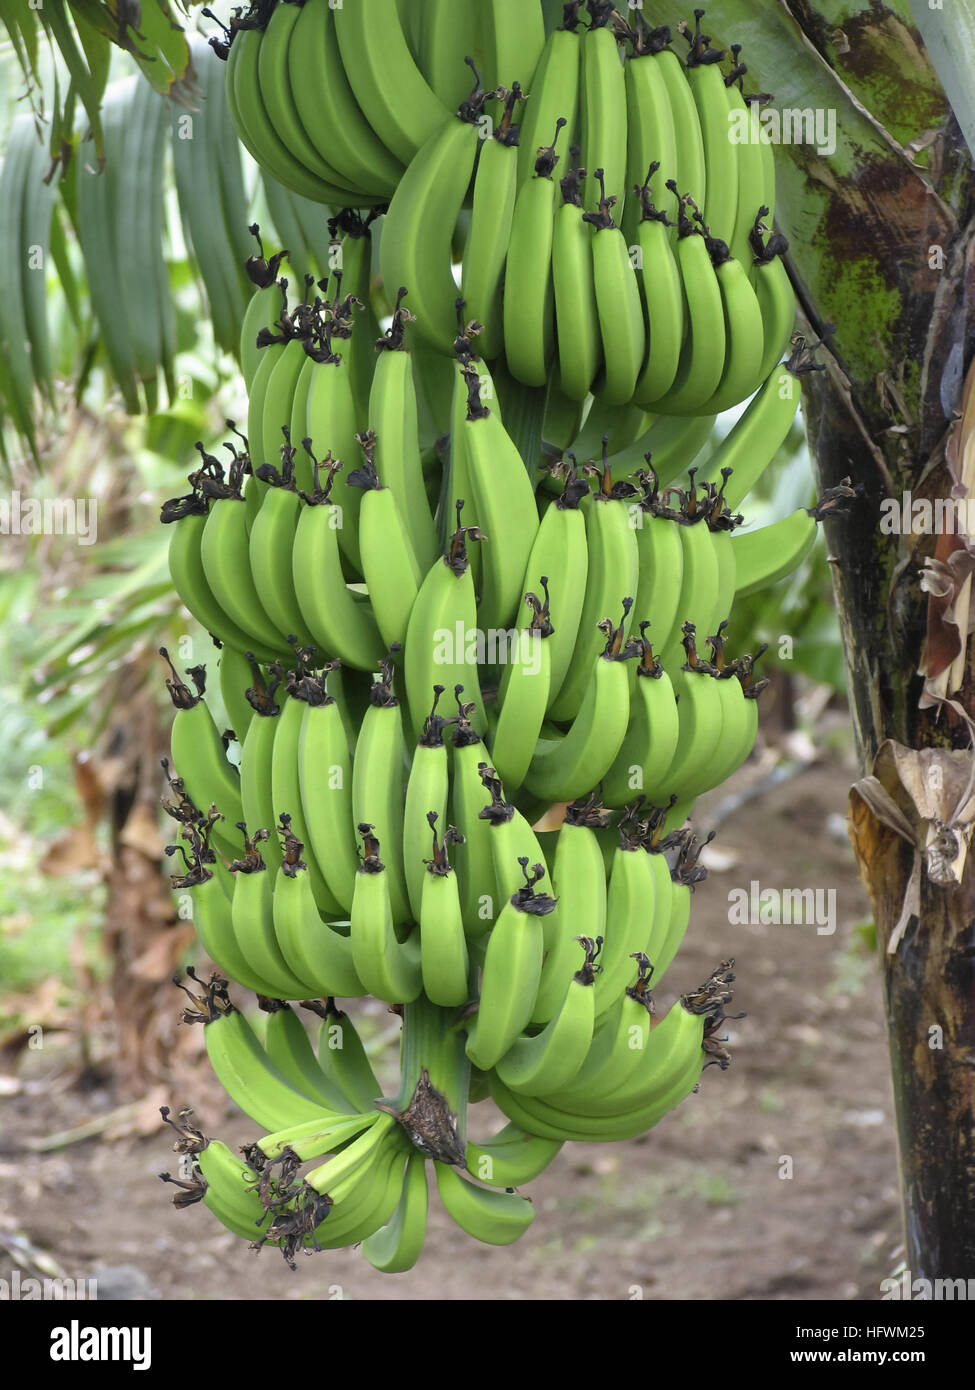 Banana tree and bunch, Musa paradisiaca Stock Photo